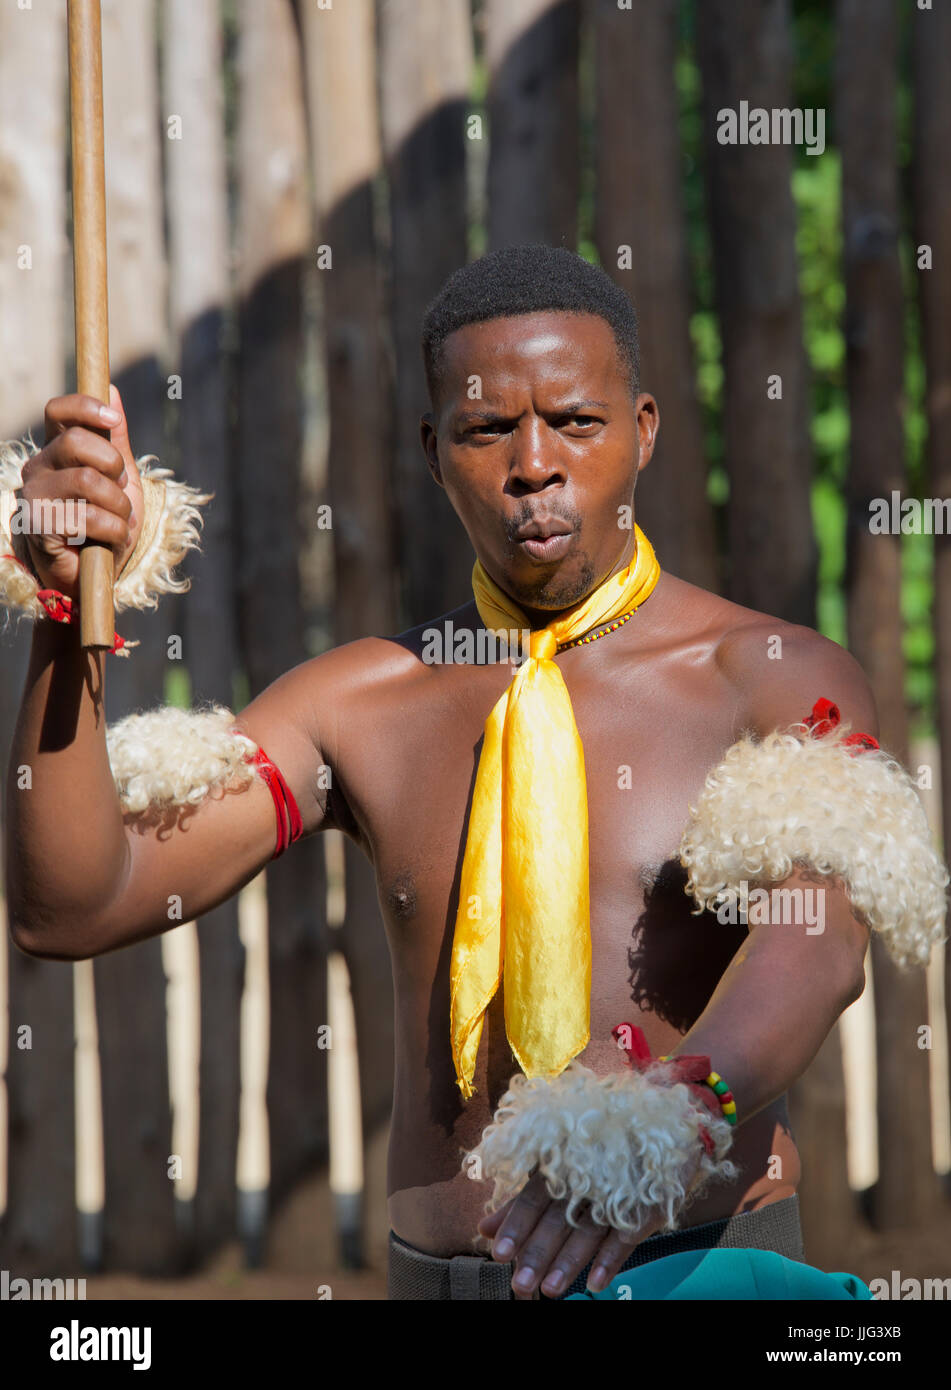 Tribal cercana al hombre realizar danza tradicional Aldea Cultural Mantenga Swazilandia África meridional Foto de stock